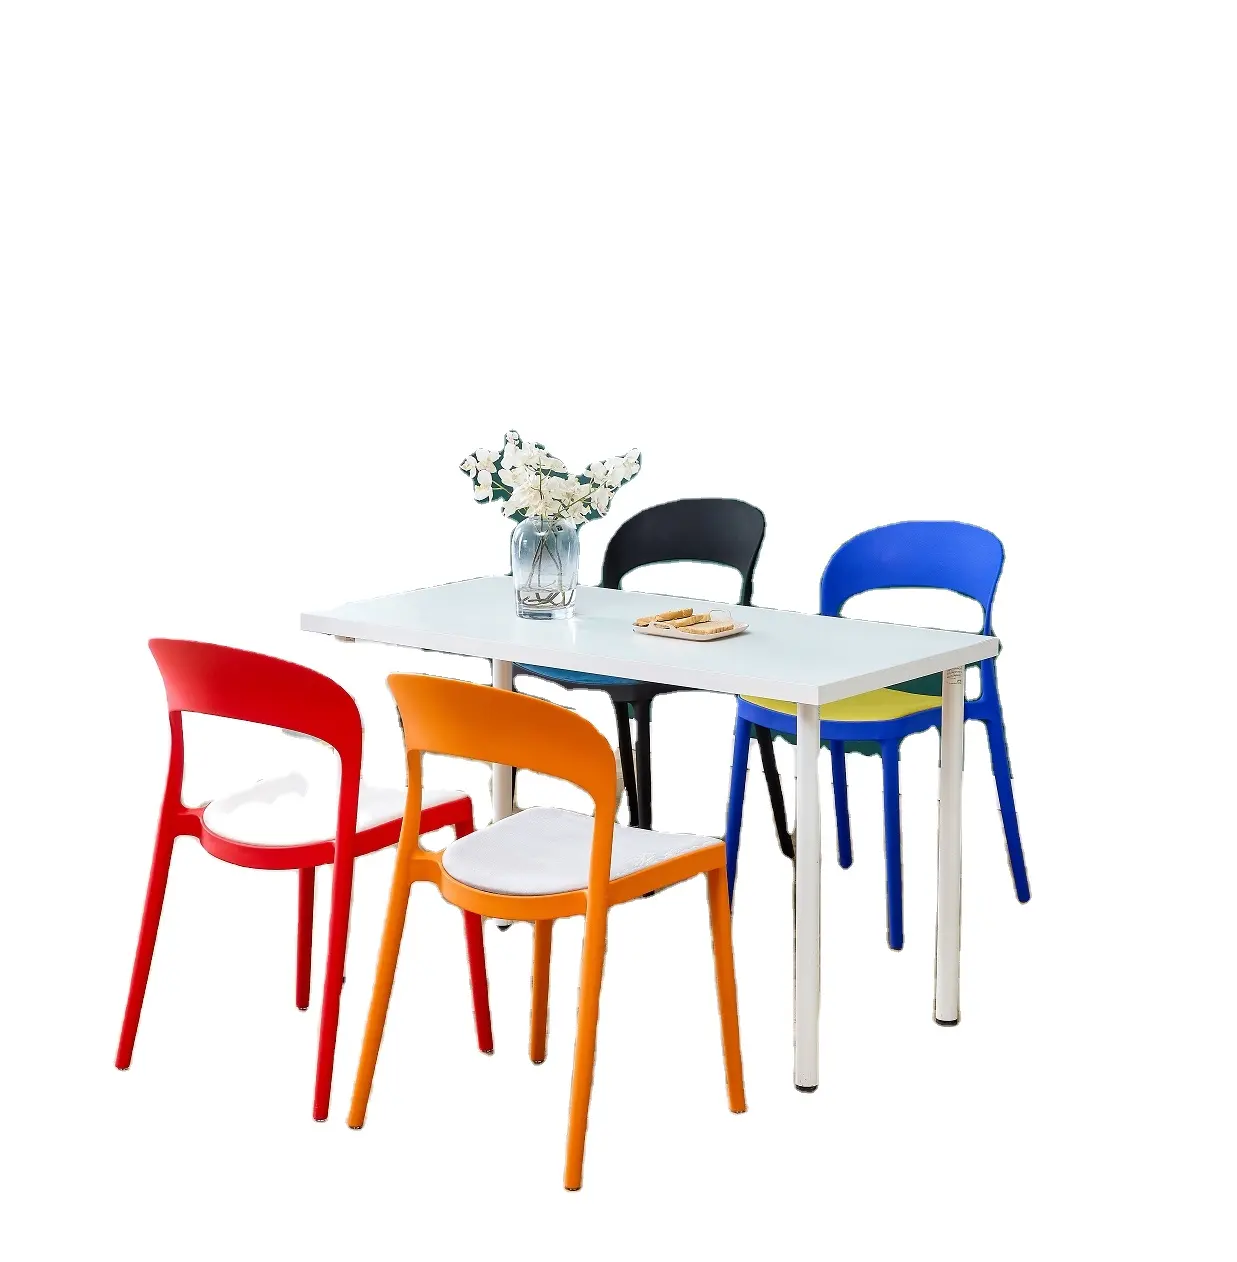 Nuovo modello a buon mercato moderno italiano esterno piccolo pranzo verde Pp pranzo sedia di plastica